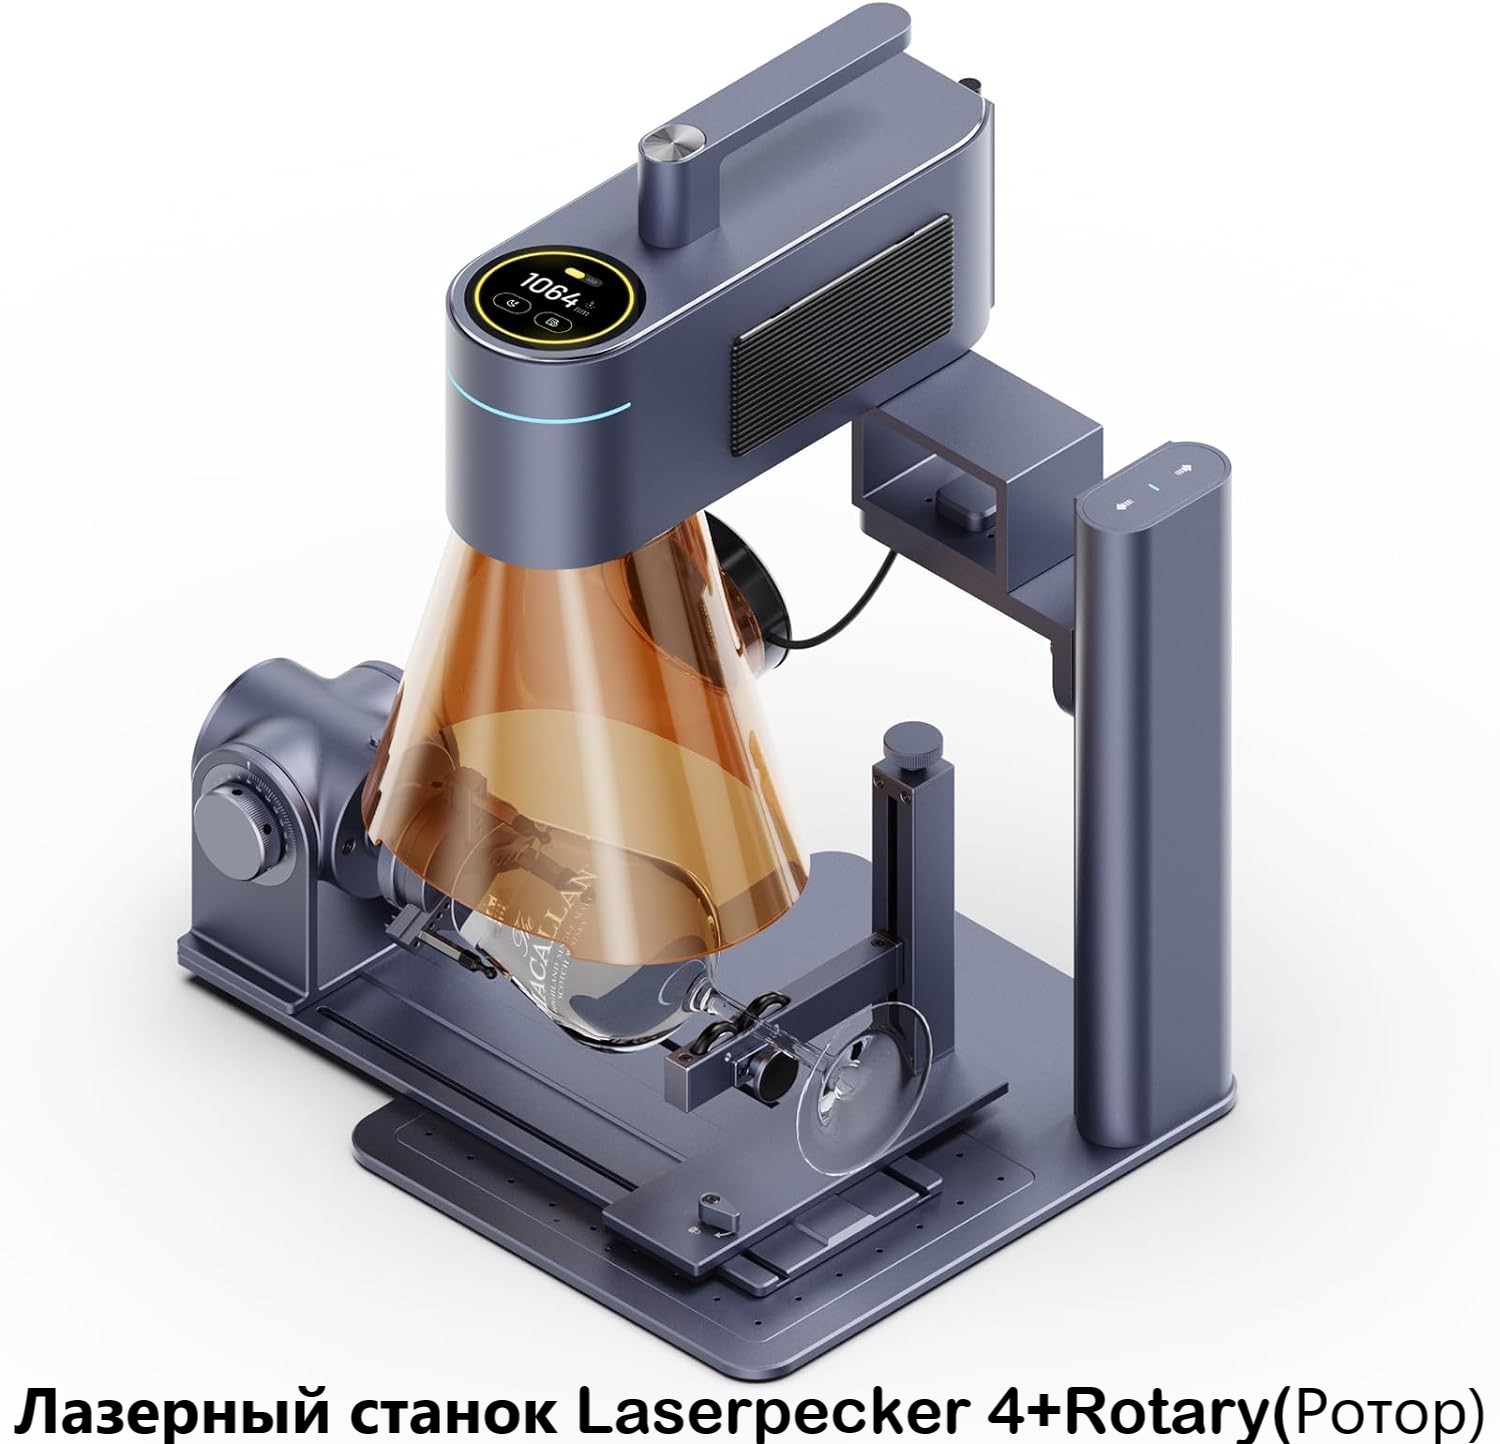 Станок для лазерной гравировки, маркировки, резки LaserPecker 4 + Rotary Extension (ротор) серьги ручная работа деревянные